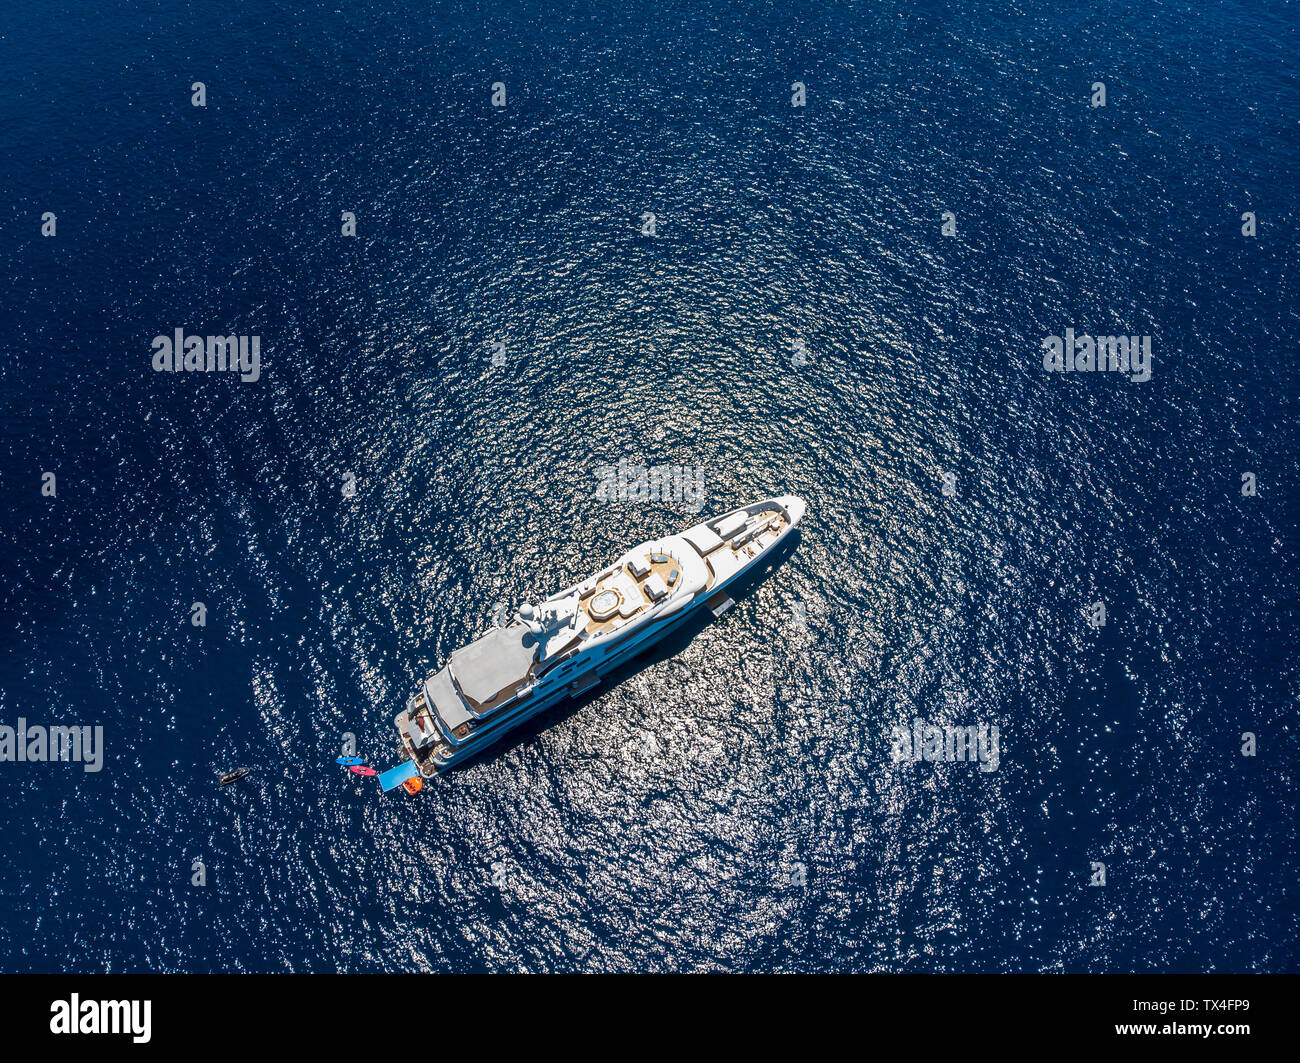 Espagne, Malaga, Costa de la Calma, vue d'un yacht de luxe, vue aérienne Banque D'Images